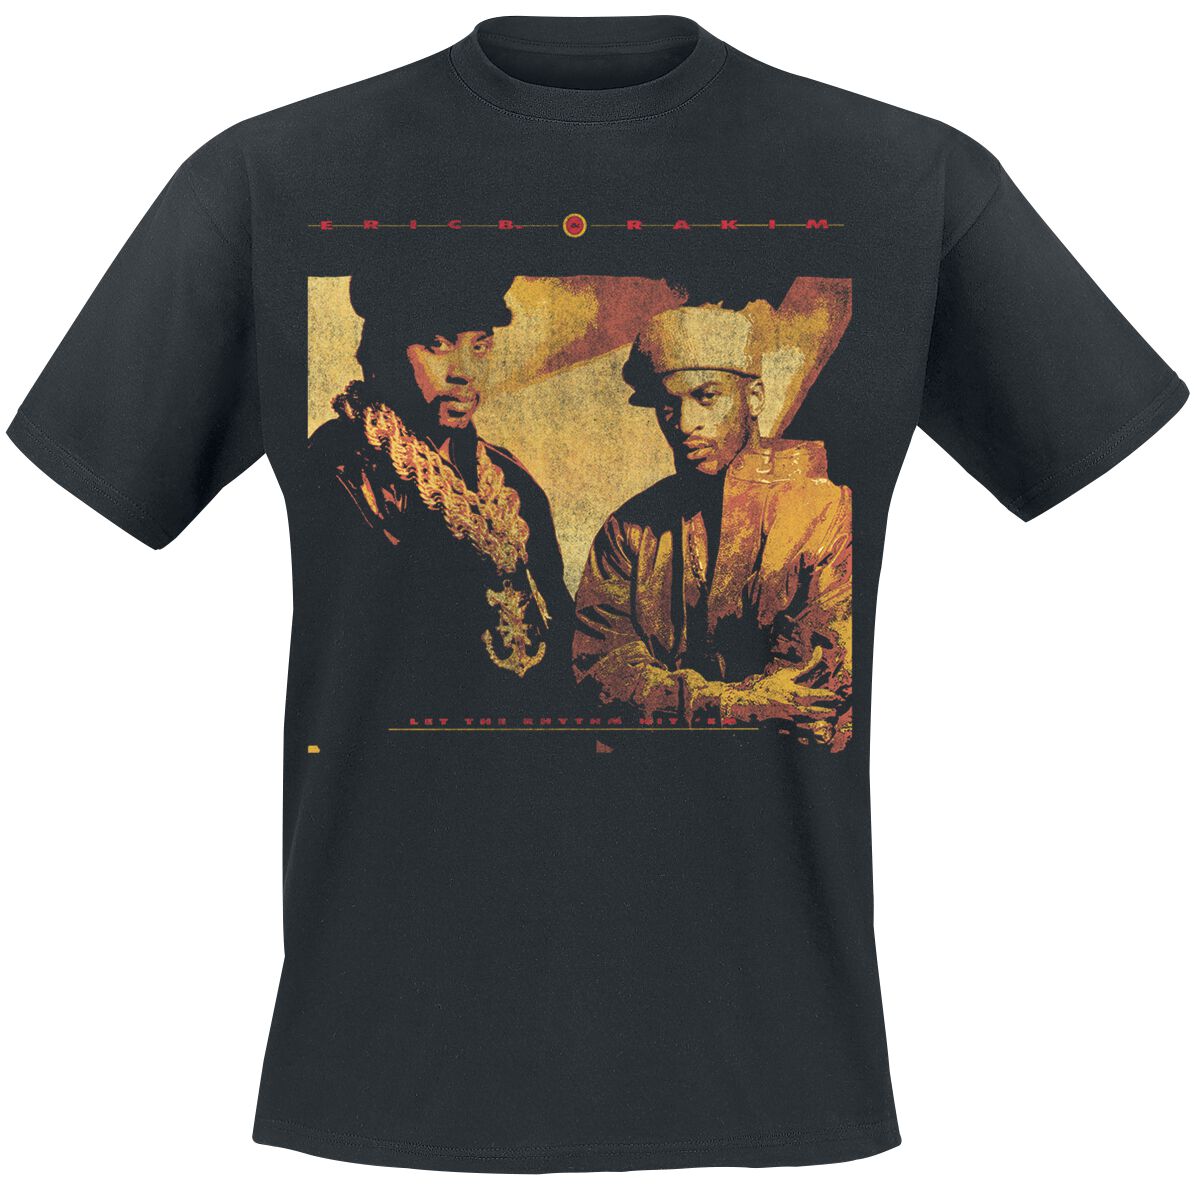 Eric B. & Rakim T-Shirt - Rhythm Hit Em - S bis 3XL - für Männer - Größe XL - schwarz  - Lizenziertes Merchandise!